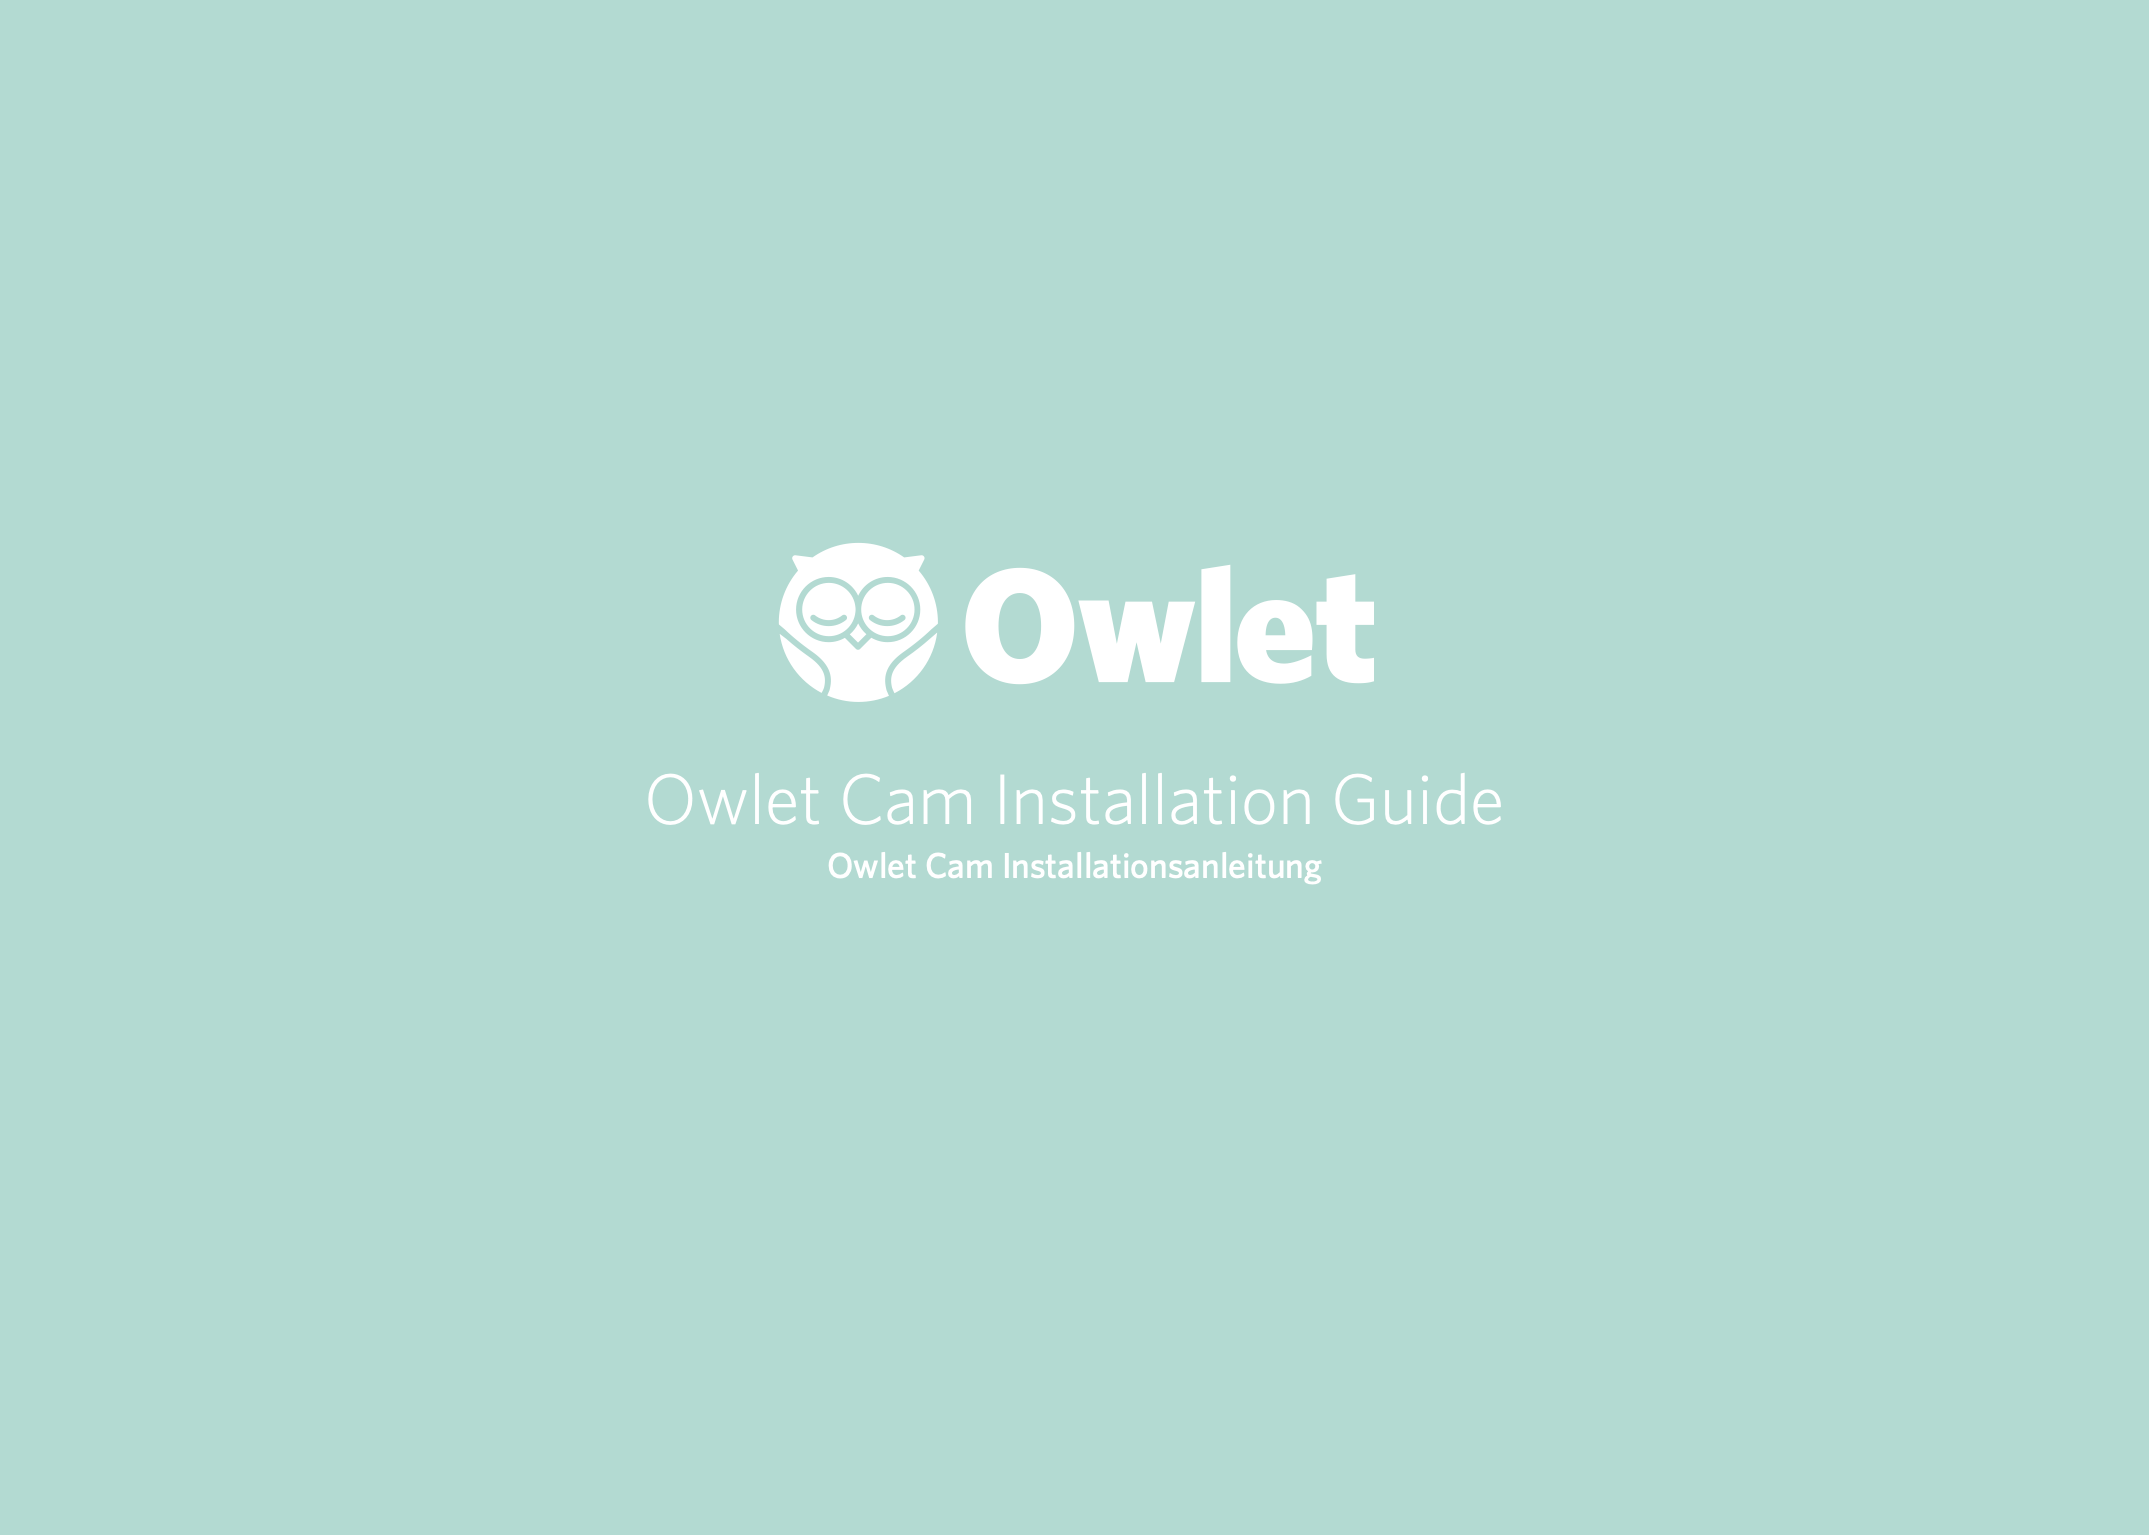 Owlet_Cam_Installationsanleitung-_German-1.png